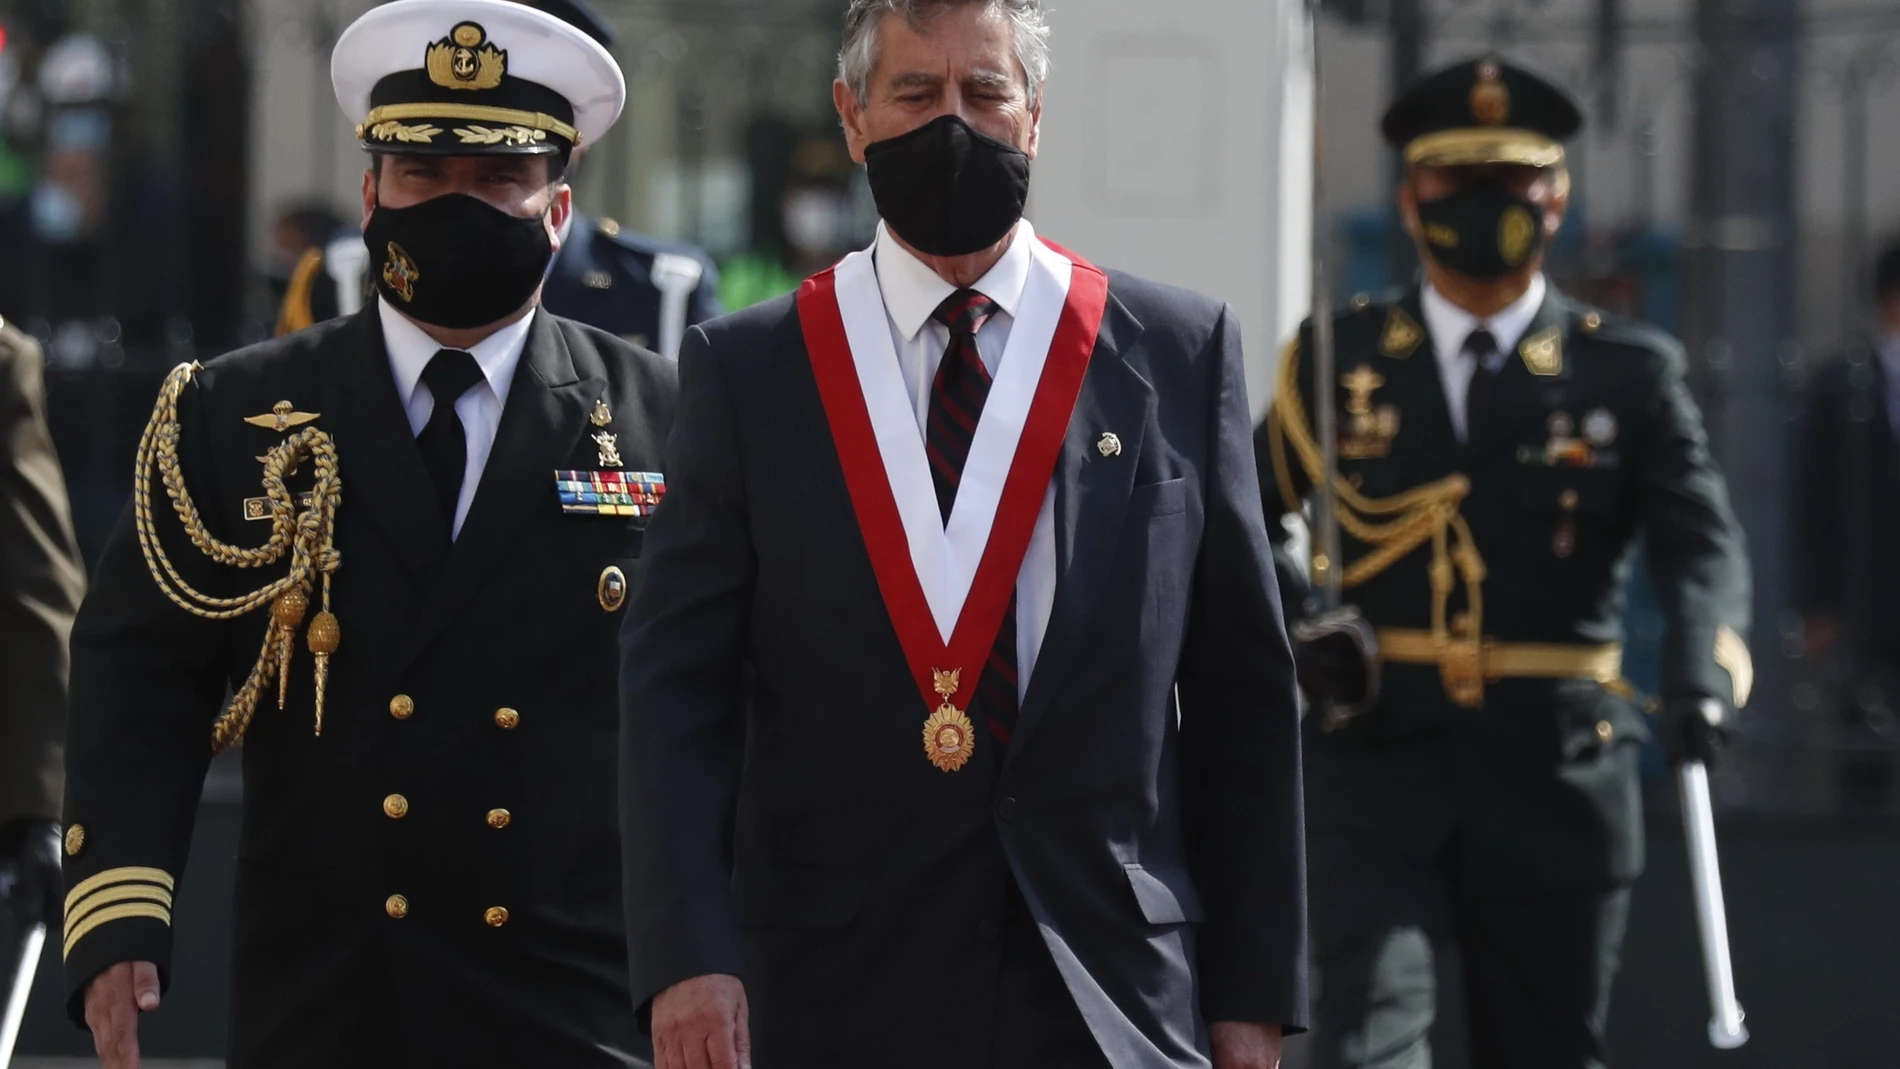 El presidente del Congreso de Perú, Francisco Sagasti, llega para ser investido como Presidente de la República, hoy, en Lima (Perú). Sagasti sucede a Manuel Merino en la Presidencia del país, tras las protestas ciudadanas de la última semana.